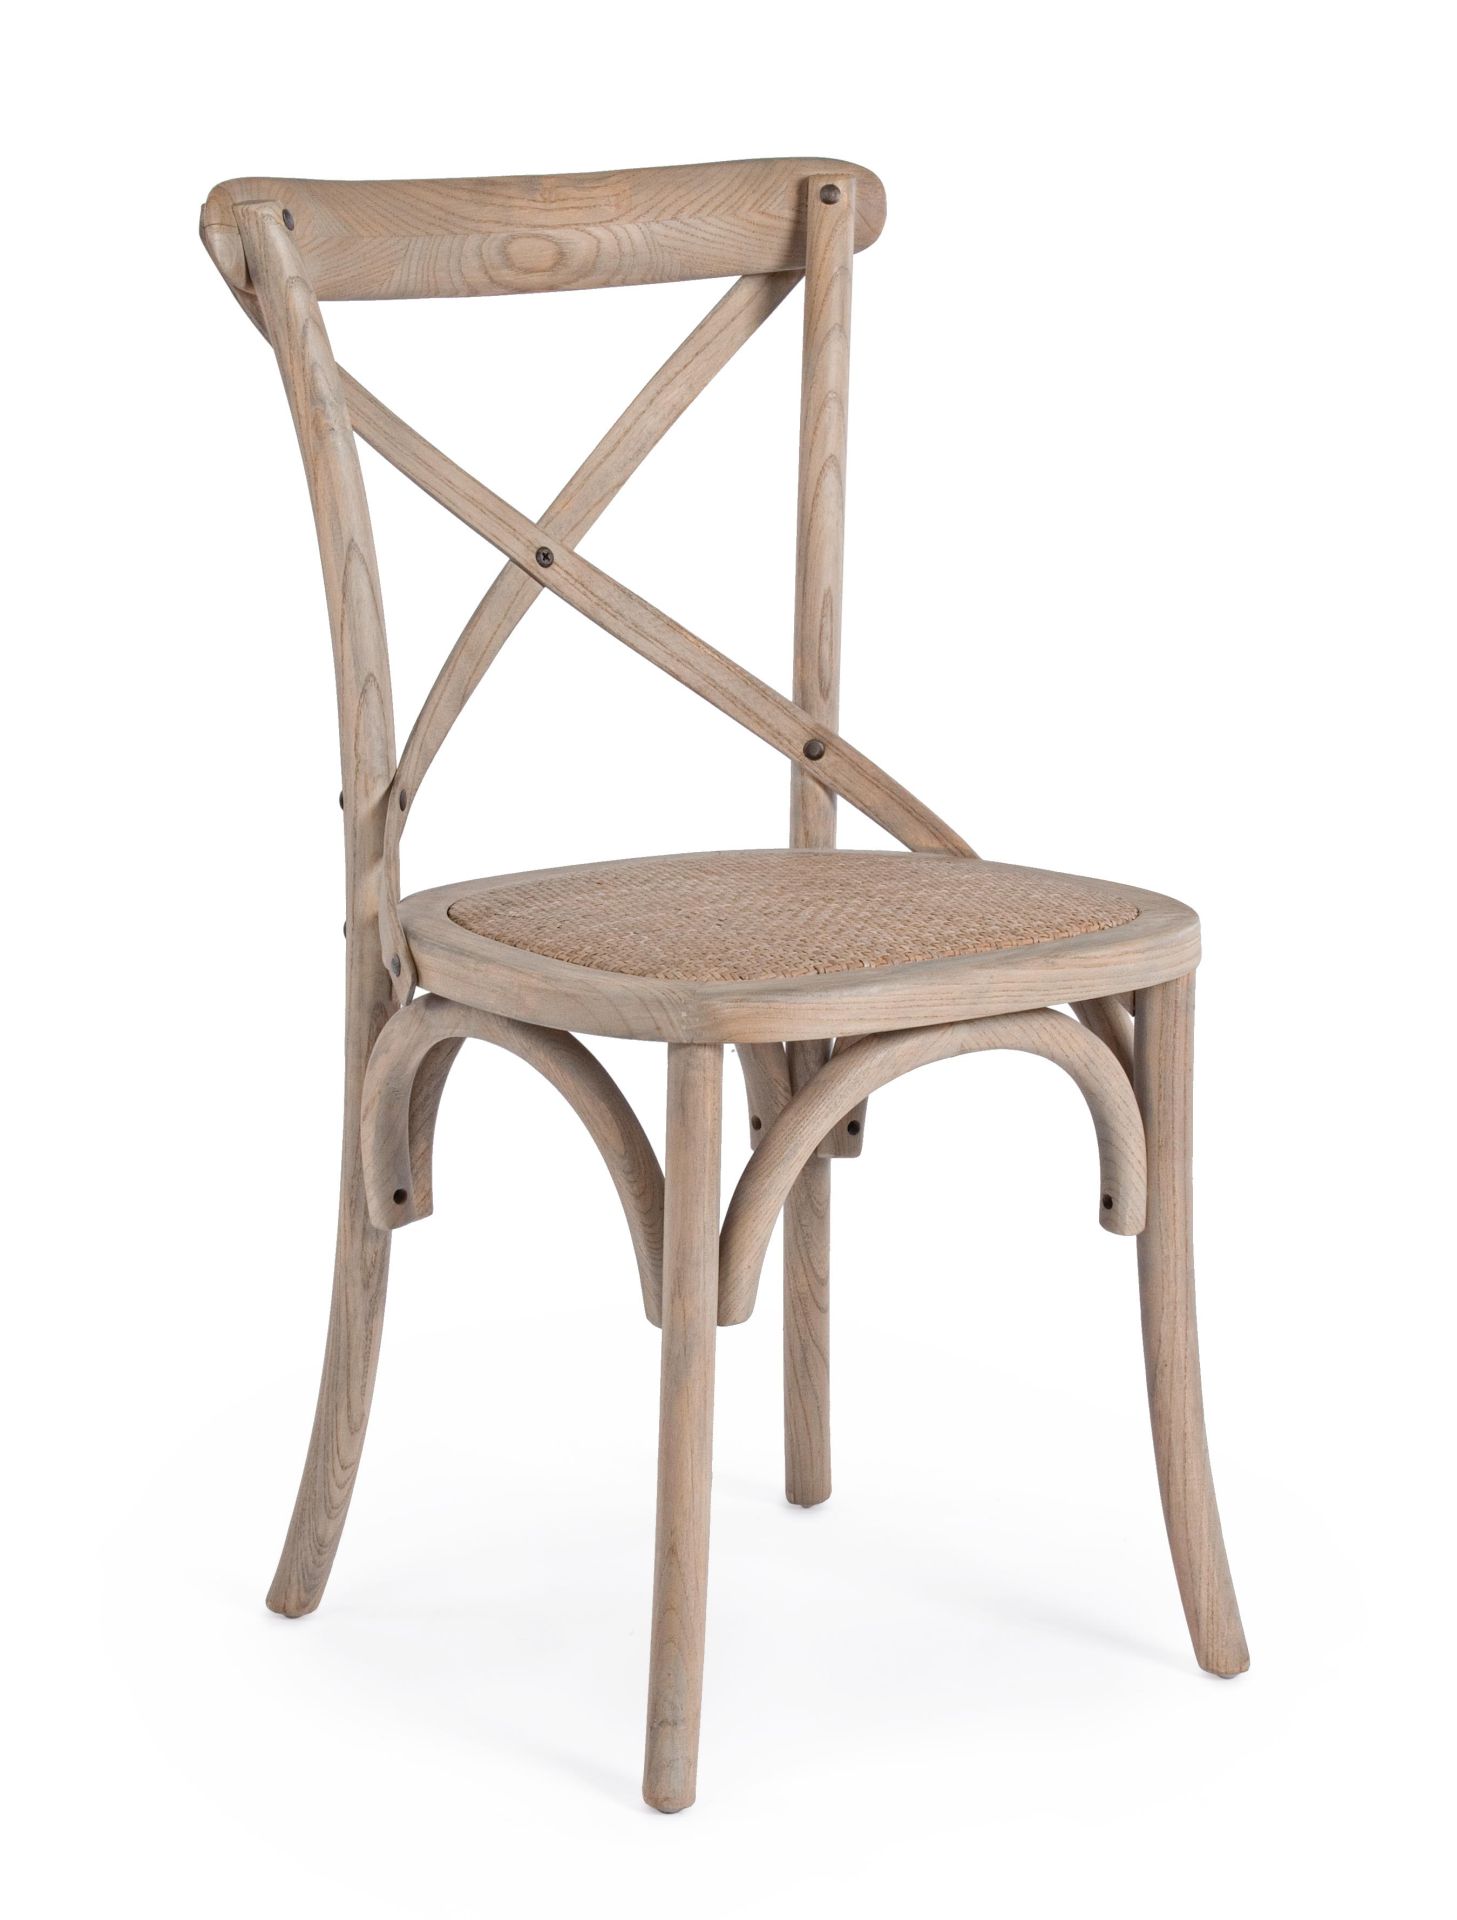 Der Stuhl Cross überzeugt mit seinem klassischen Design. Gefertigt wurde der Stuhl aus Ulmenholz, welches einen natürlichen Farbton besitzt. Die Sitz- und Rückenfläche ist aus Rattan gefertigt. Die Sitzhöhe beträgt 46 cm.